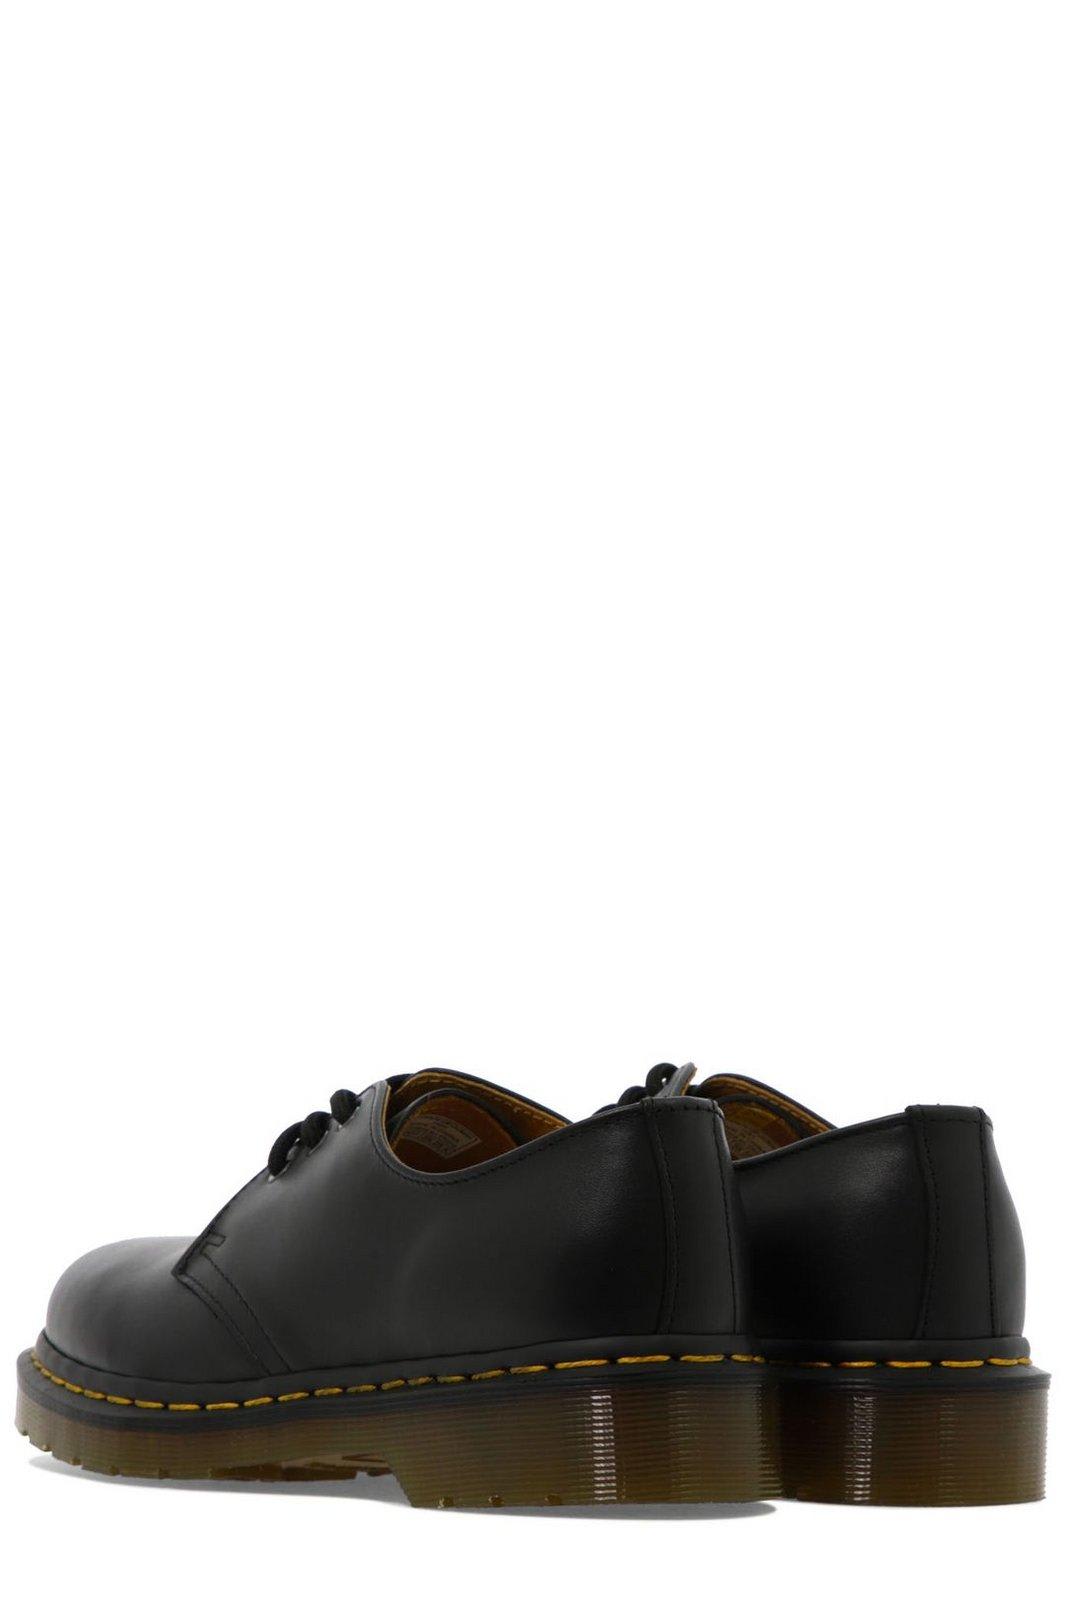 Shop Dr. Martens' 1461 Lace Up Shoes In Black